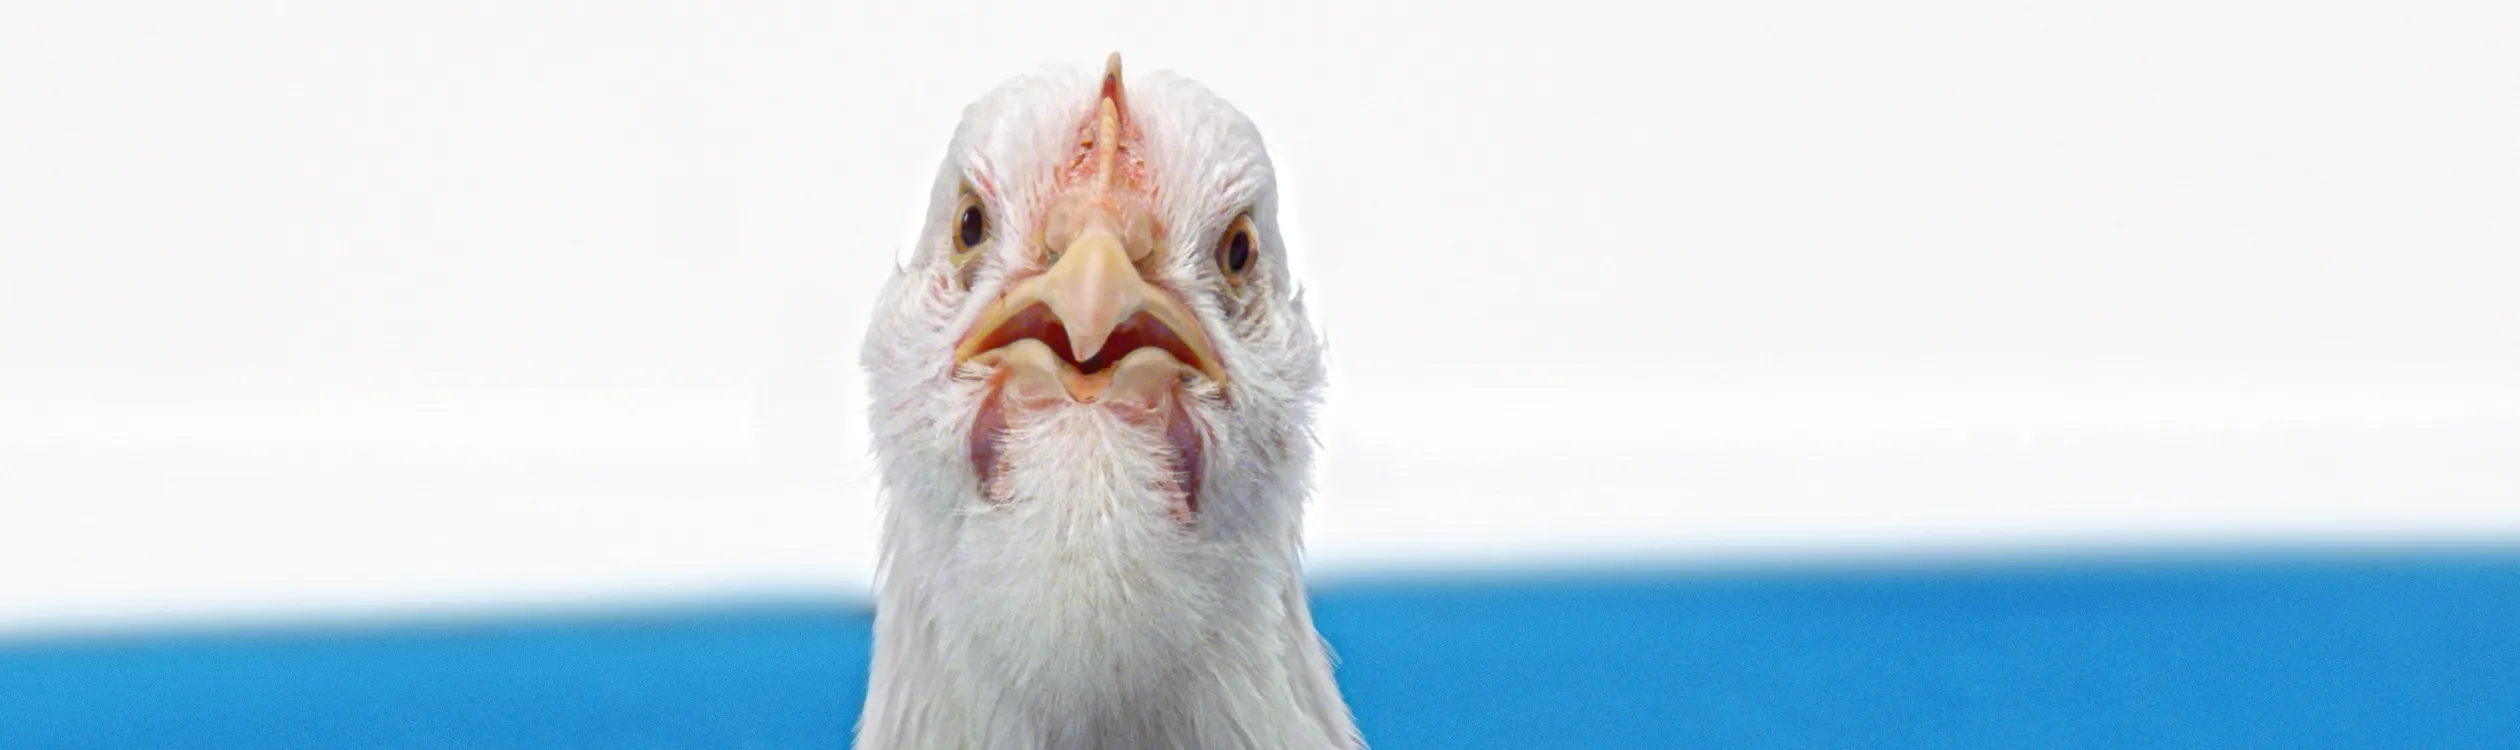 Beeld: close up van een boze kip